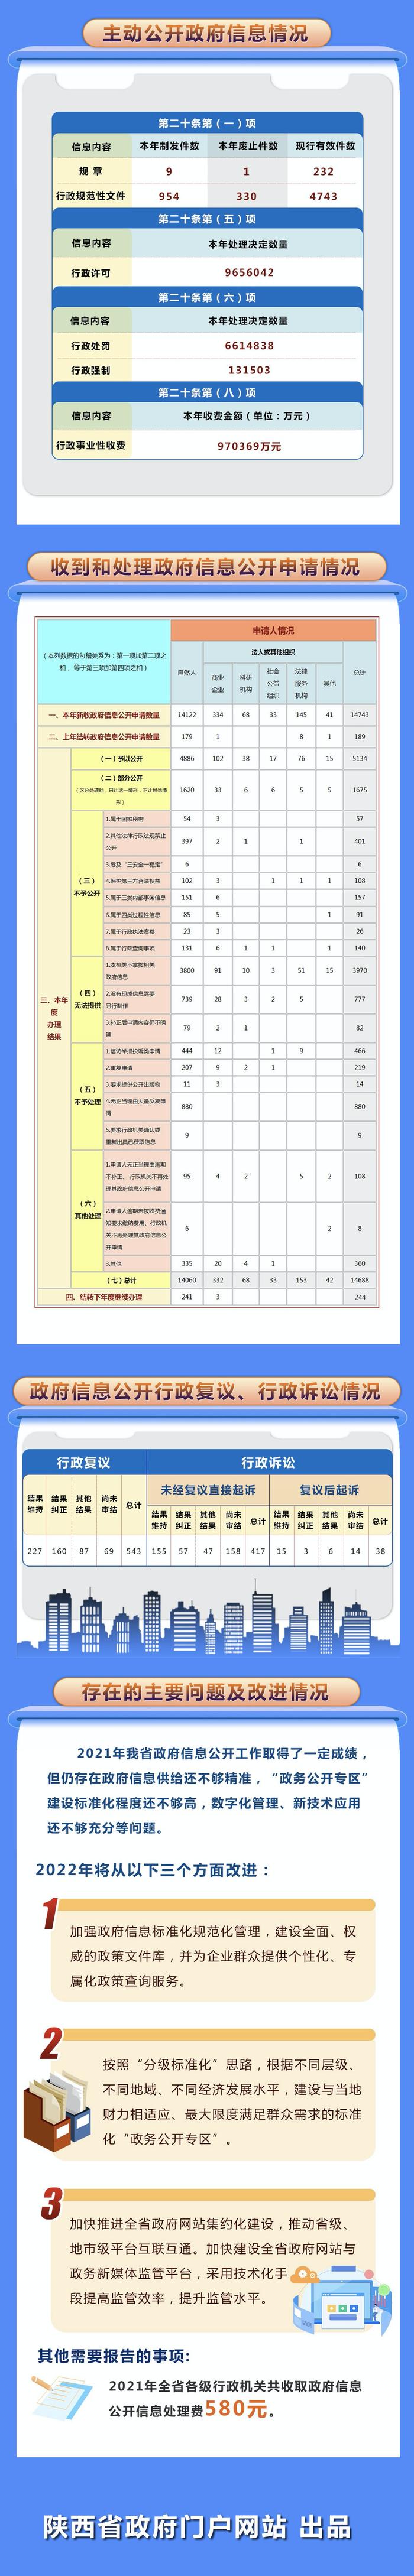 陕西省人民政府2021年政府信息公开工作年度报告